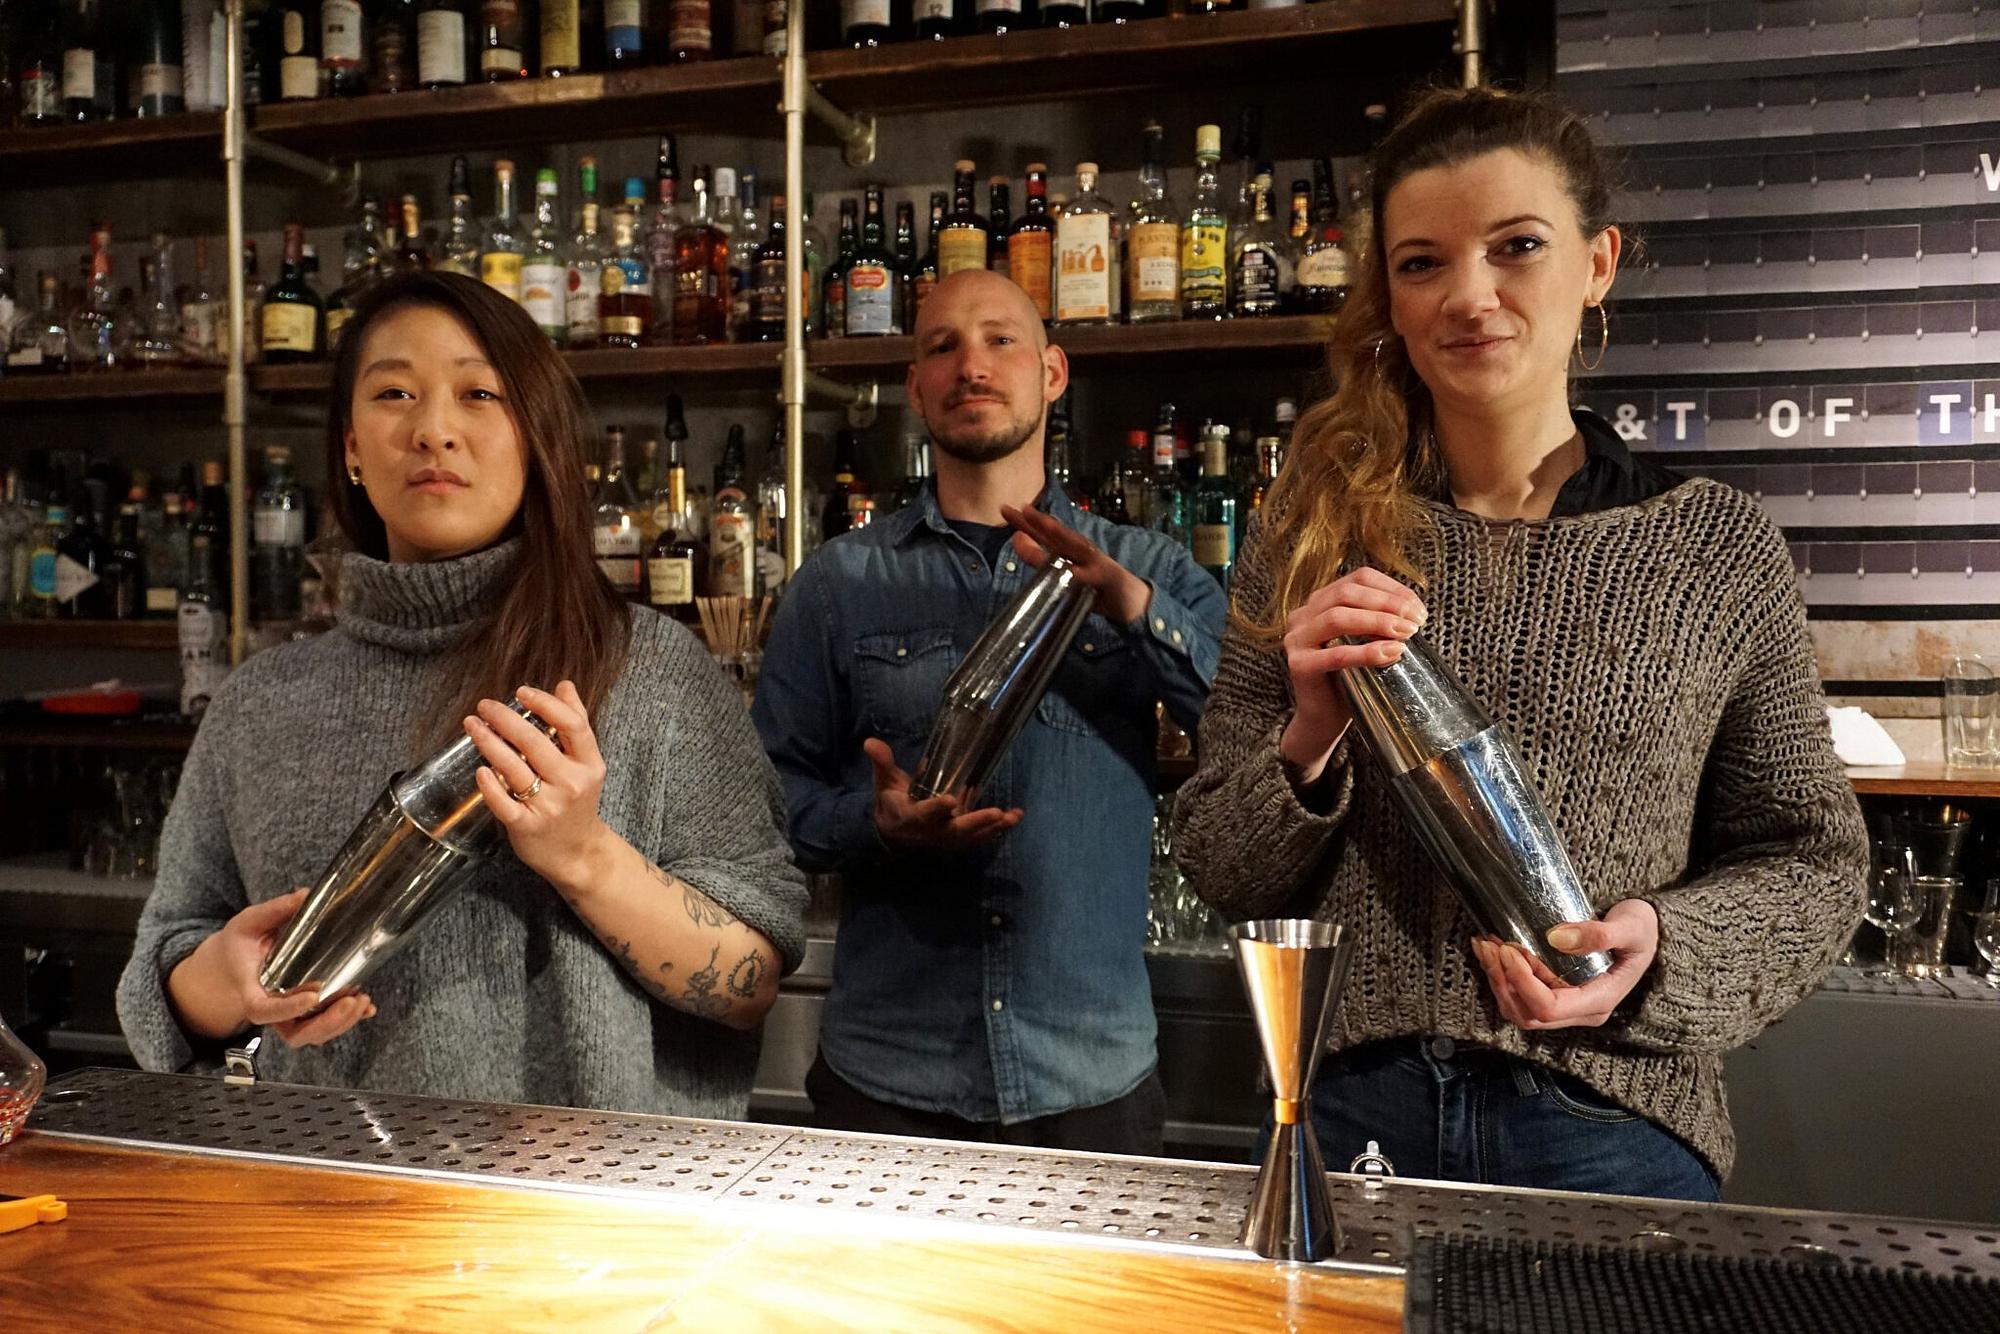 Drei Mitarbeitende stehen hinter einer Bar und mixen Getränke.